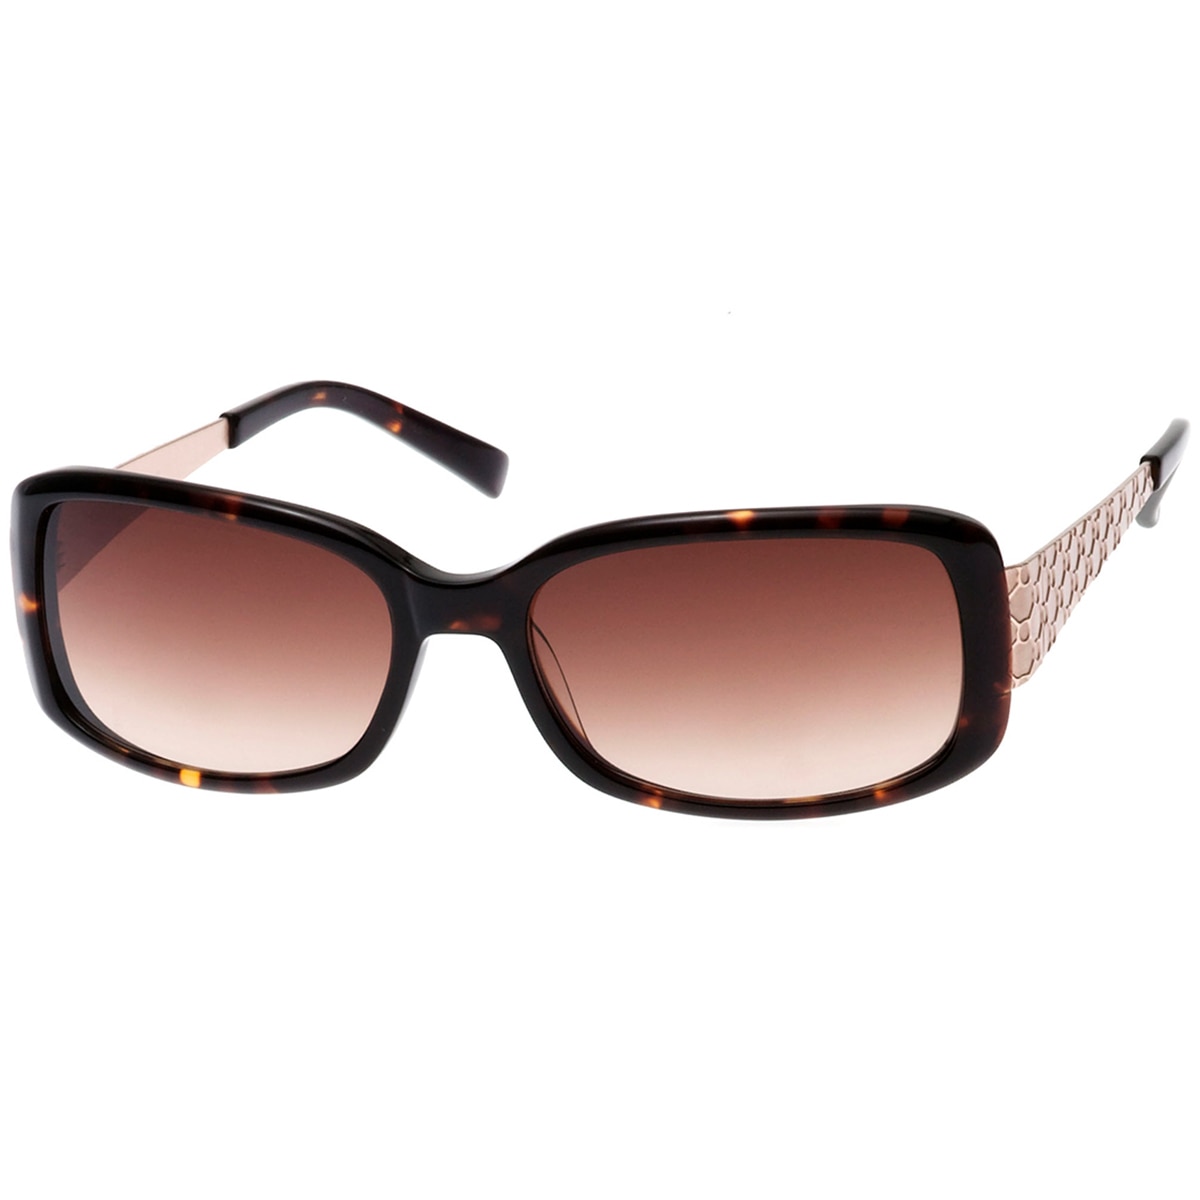 Oroton Exotic Women's Sunglasses OPO09818020 | Costco Aus...